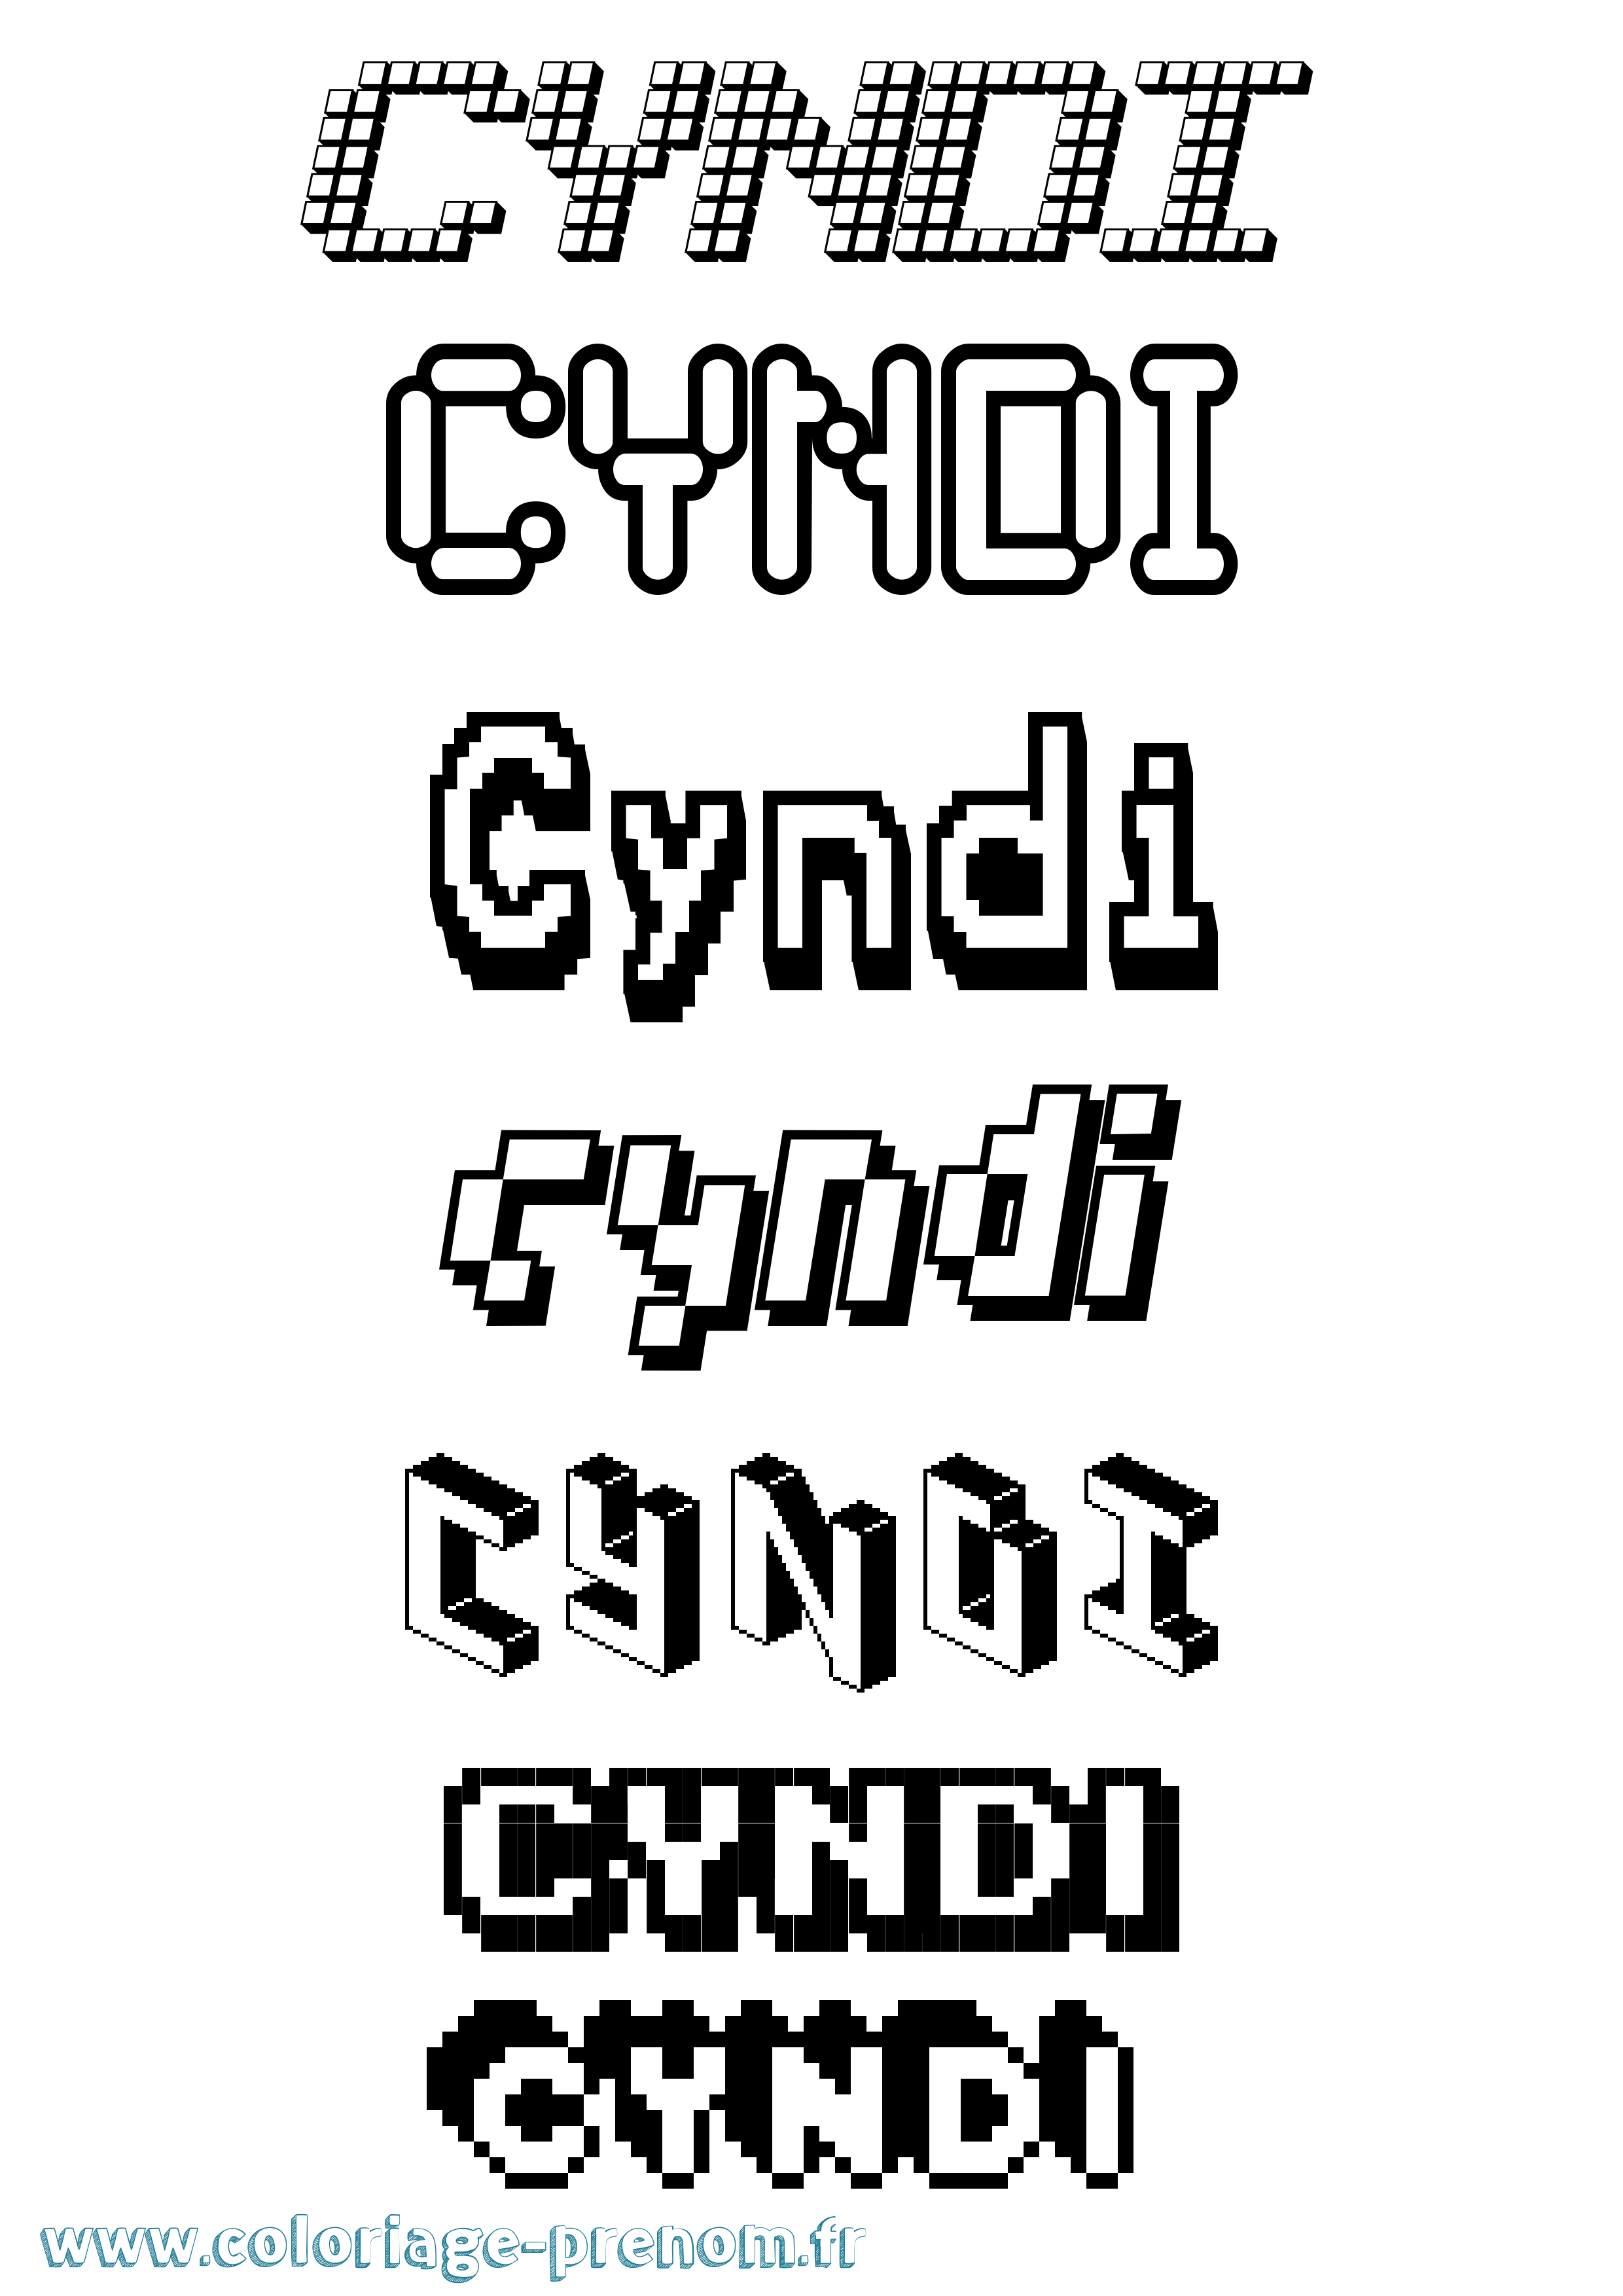 Coloriage prénom Cyndi Pixel